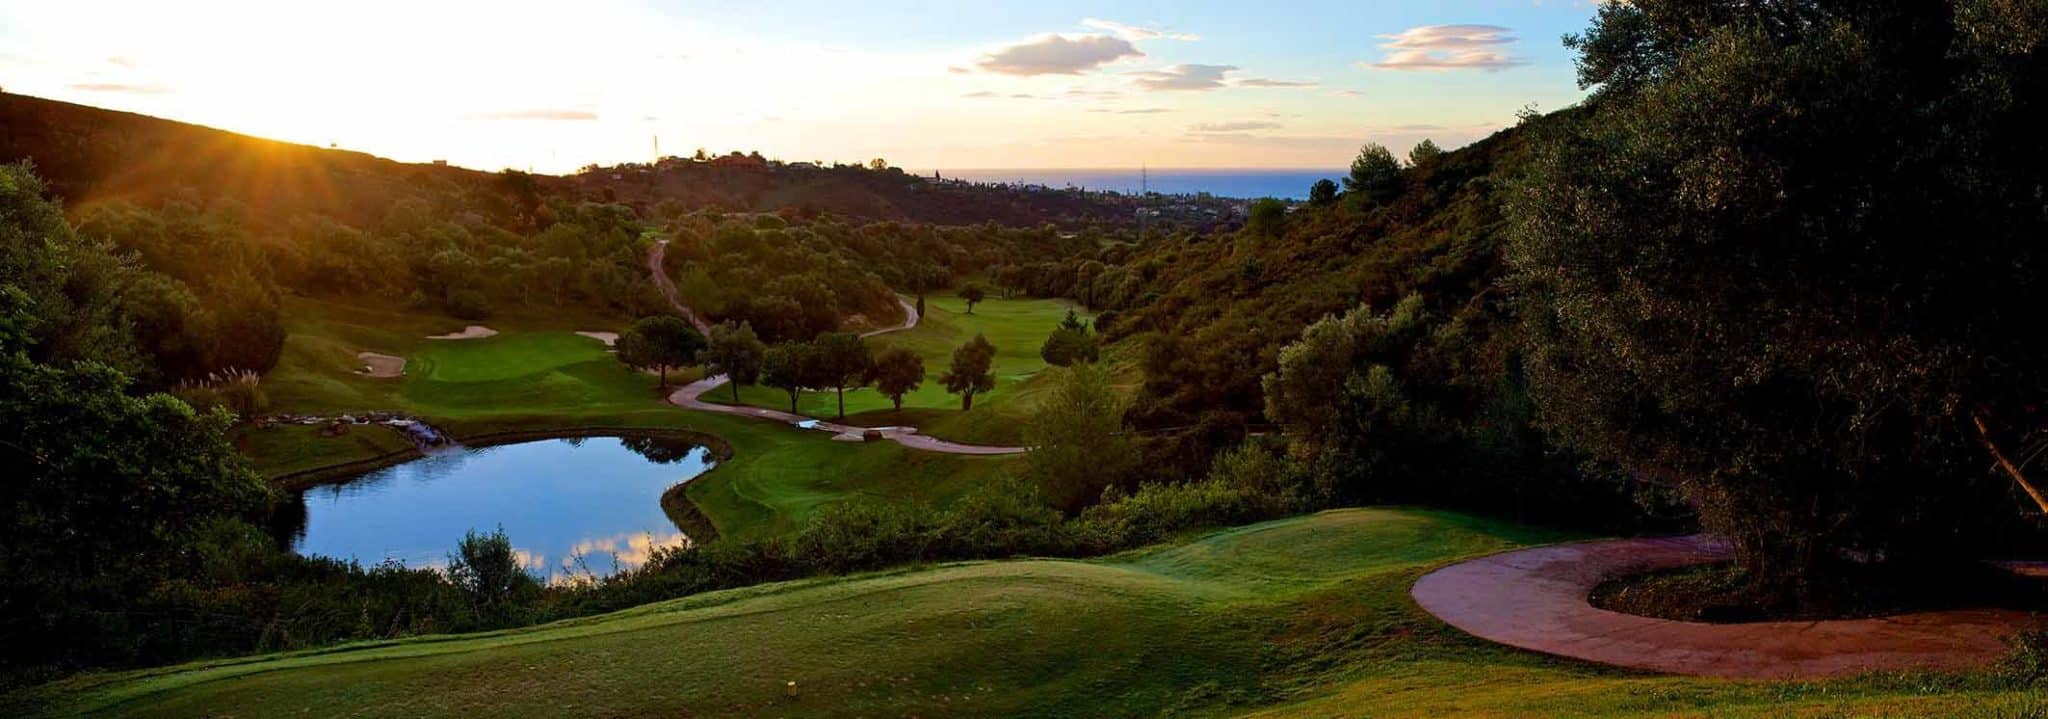 Kompliment gå manuskript Marbella Golf & Country Club - Robert Trent Jones - Lecoingolf